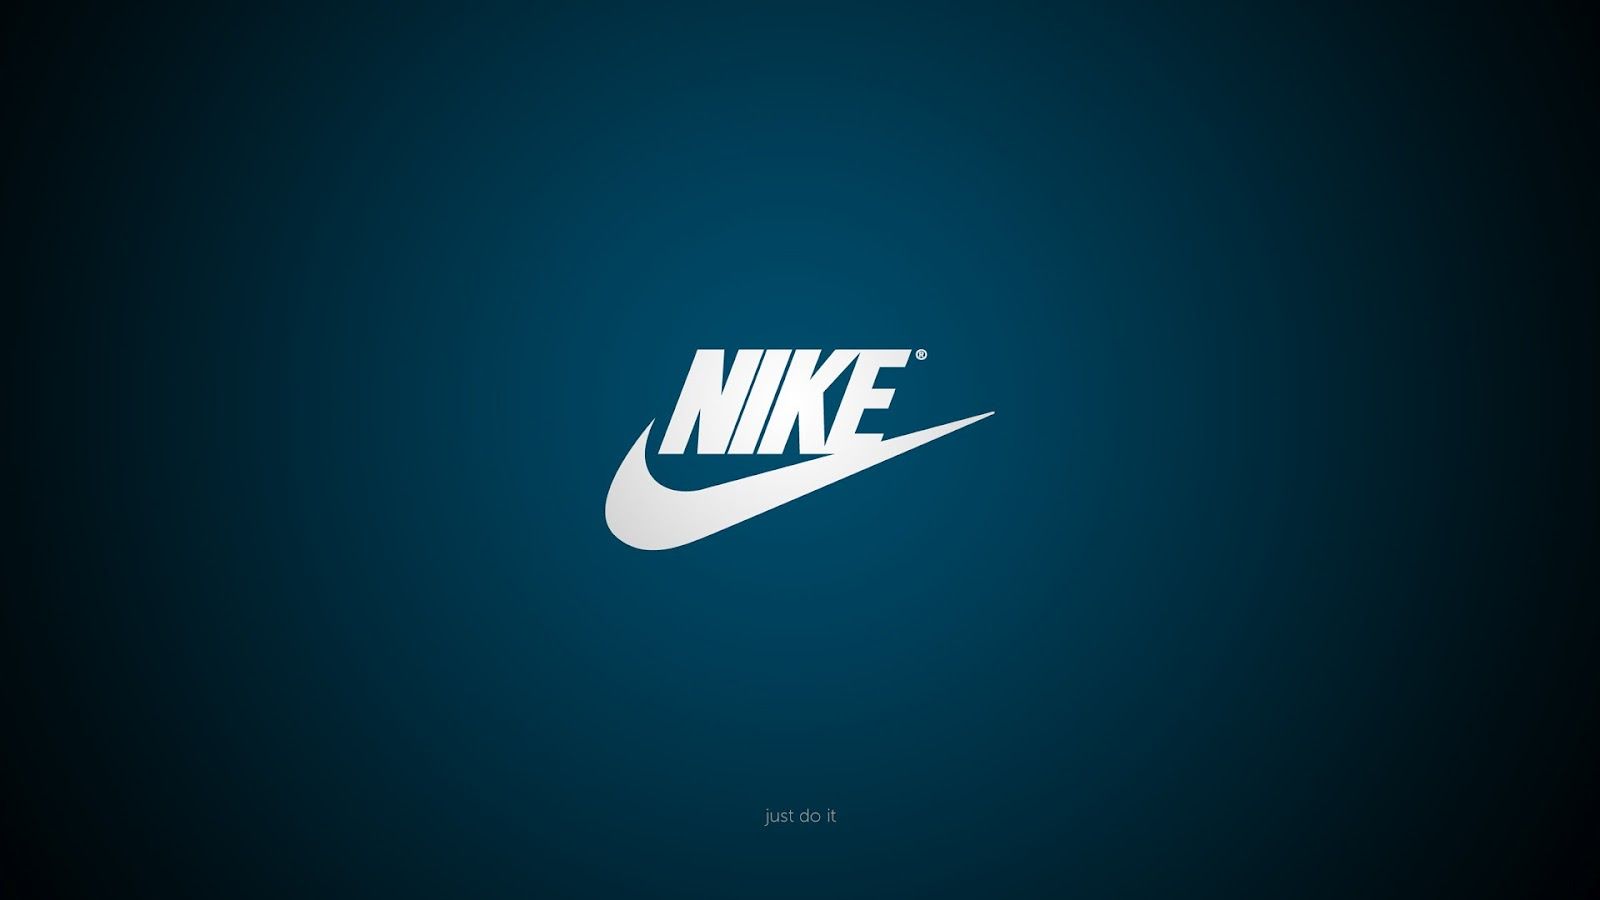 nike brand logo minimal HD wallpaper. Nike logo wallpaper, Nike wallpaper, Logo wallpaper hd